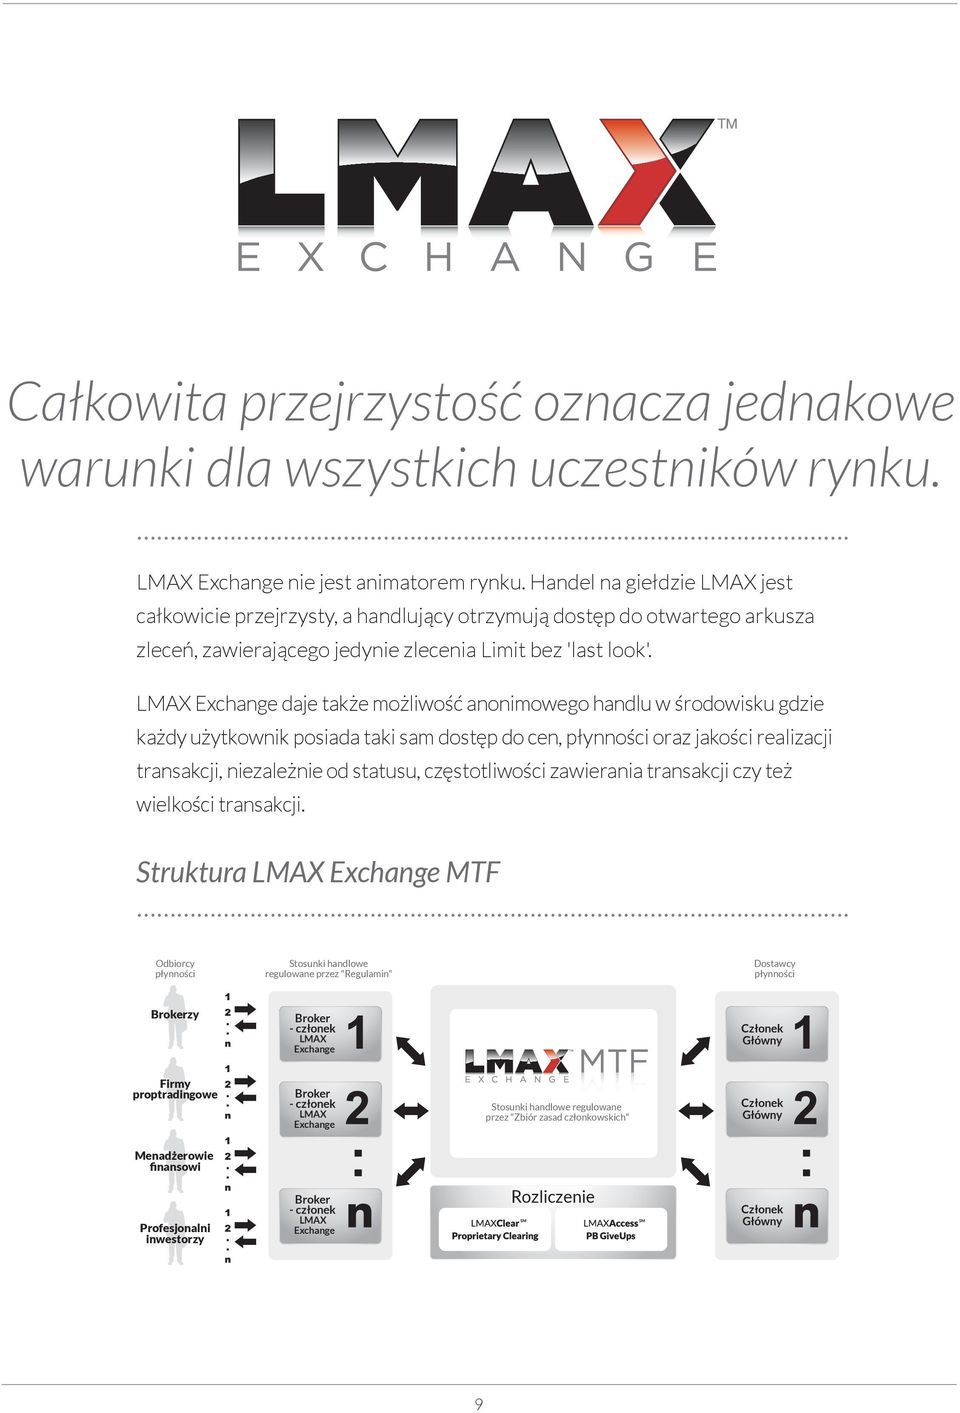 LMAX Exchange daje także możliwość anonimowego handlu w środowisku gdzie każdy użytkownik posiada taki sam dostęp do cen, płynności oraz jakości realizacji transakcji, niezależnie od statusu,